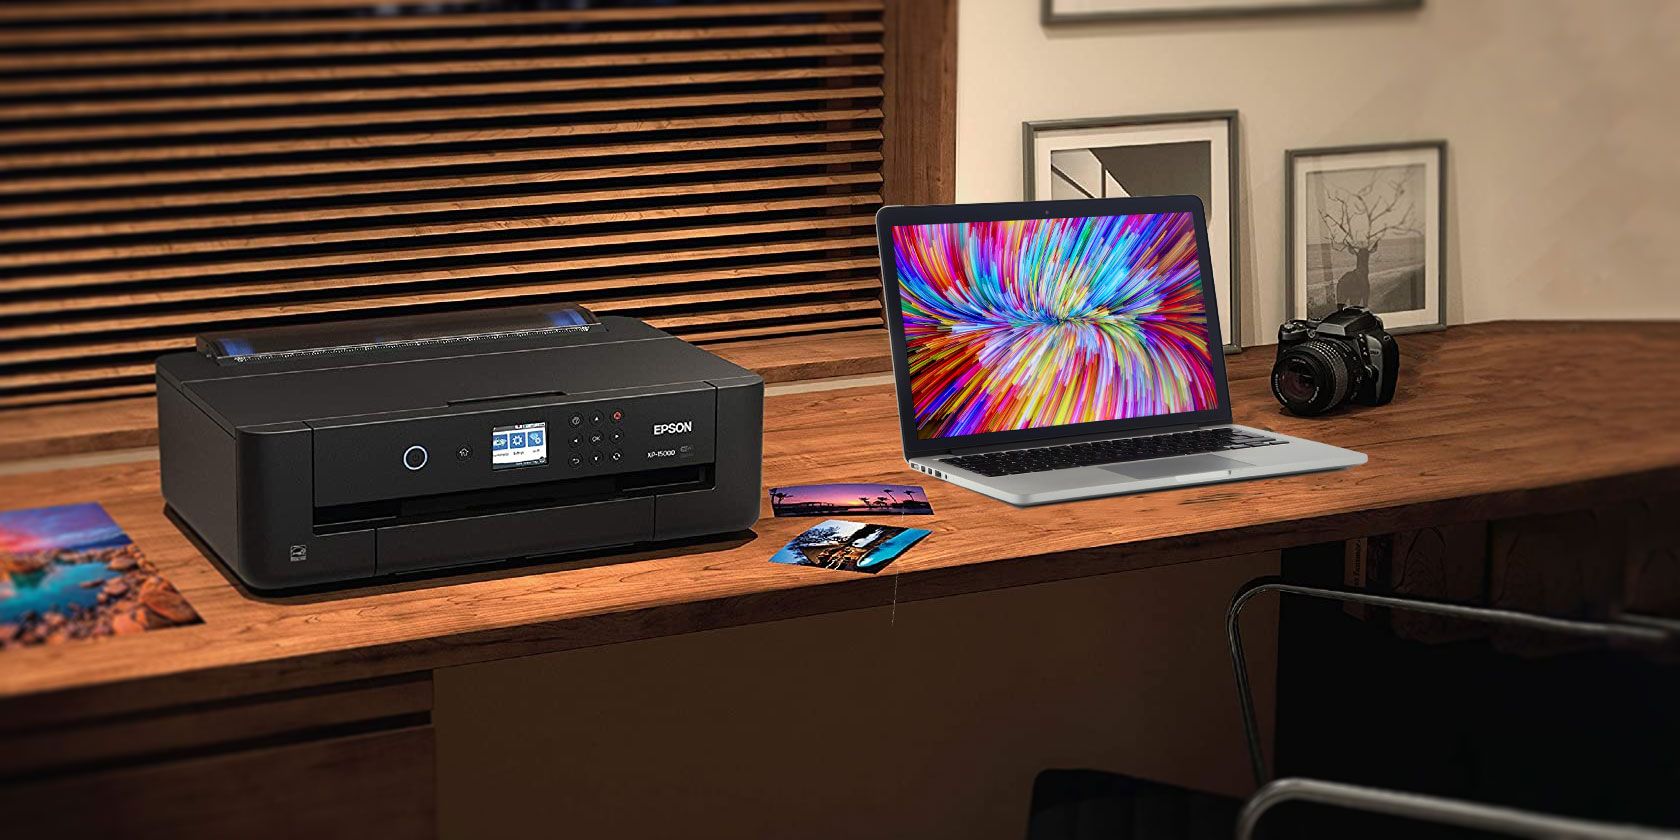 2017 compcast home printer for mac